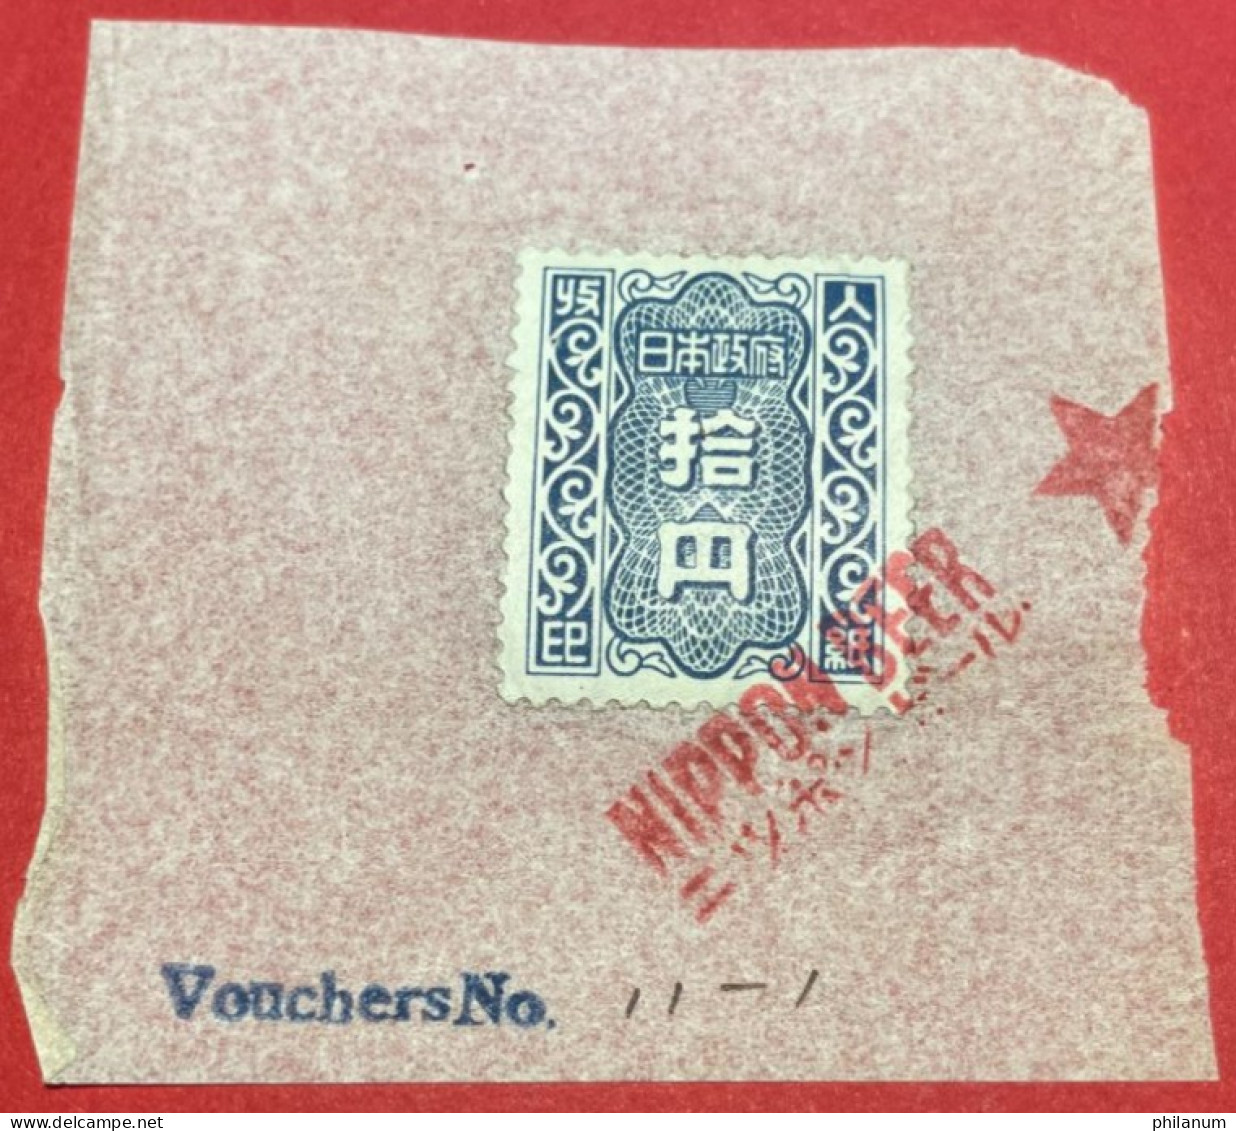 GIAPPONE 1946-1957 - #1 - MARCA DA BOLLO 100 YEN - SHOWAGIAPPONE 1946-1957 - #1 - MARCA DA BOLLO 100 YEN - SHOWA - Lettres & Documents